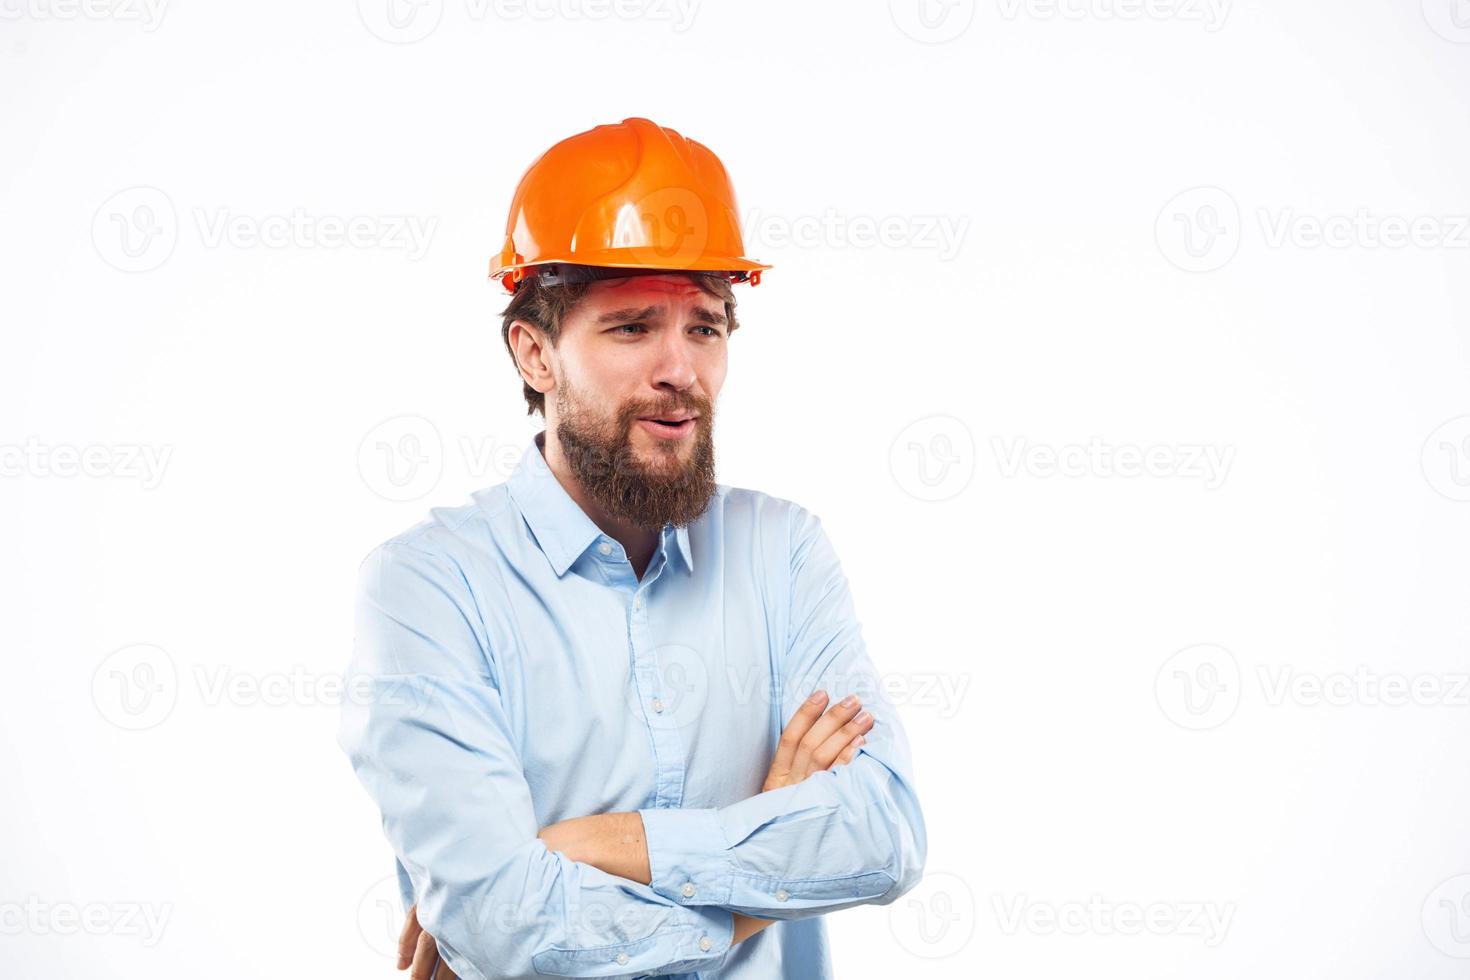 homem dentro trabalhos uniforme laranja capacete profissional segurança indústria construção foto